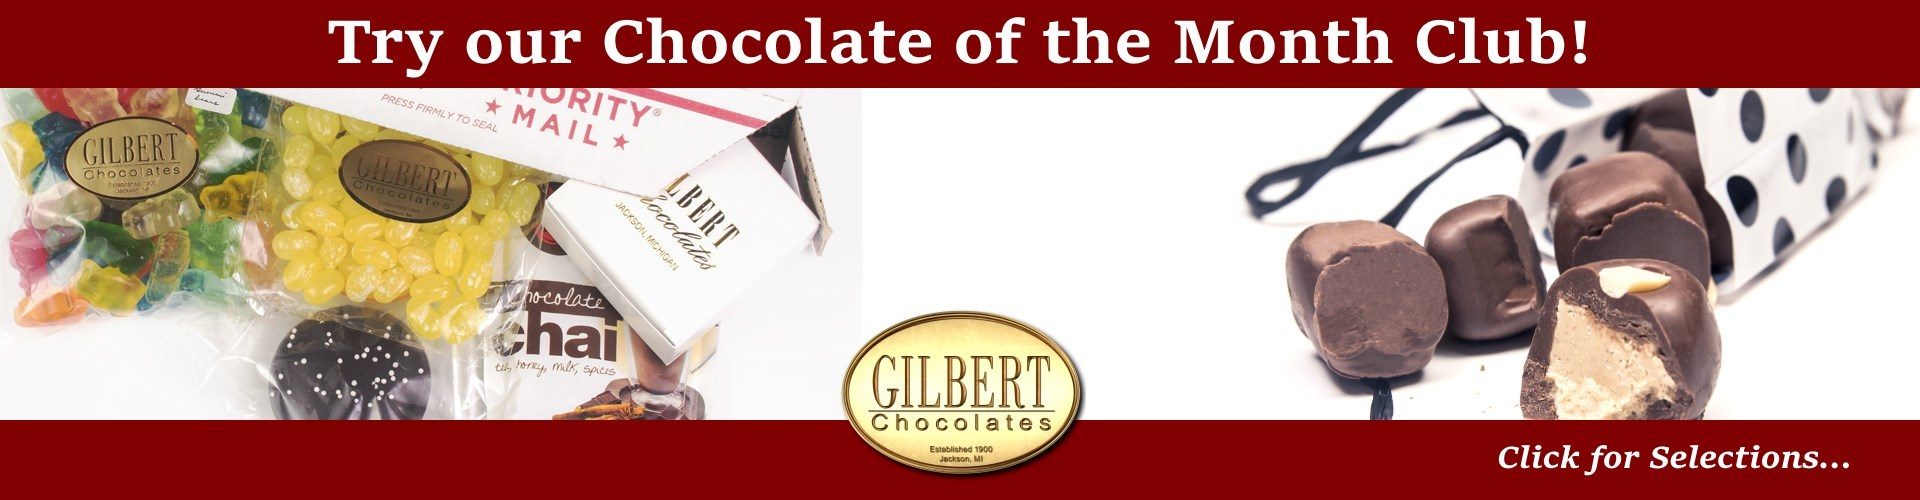 Gilbert Chocolates Christmas Gifts banner